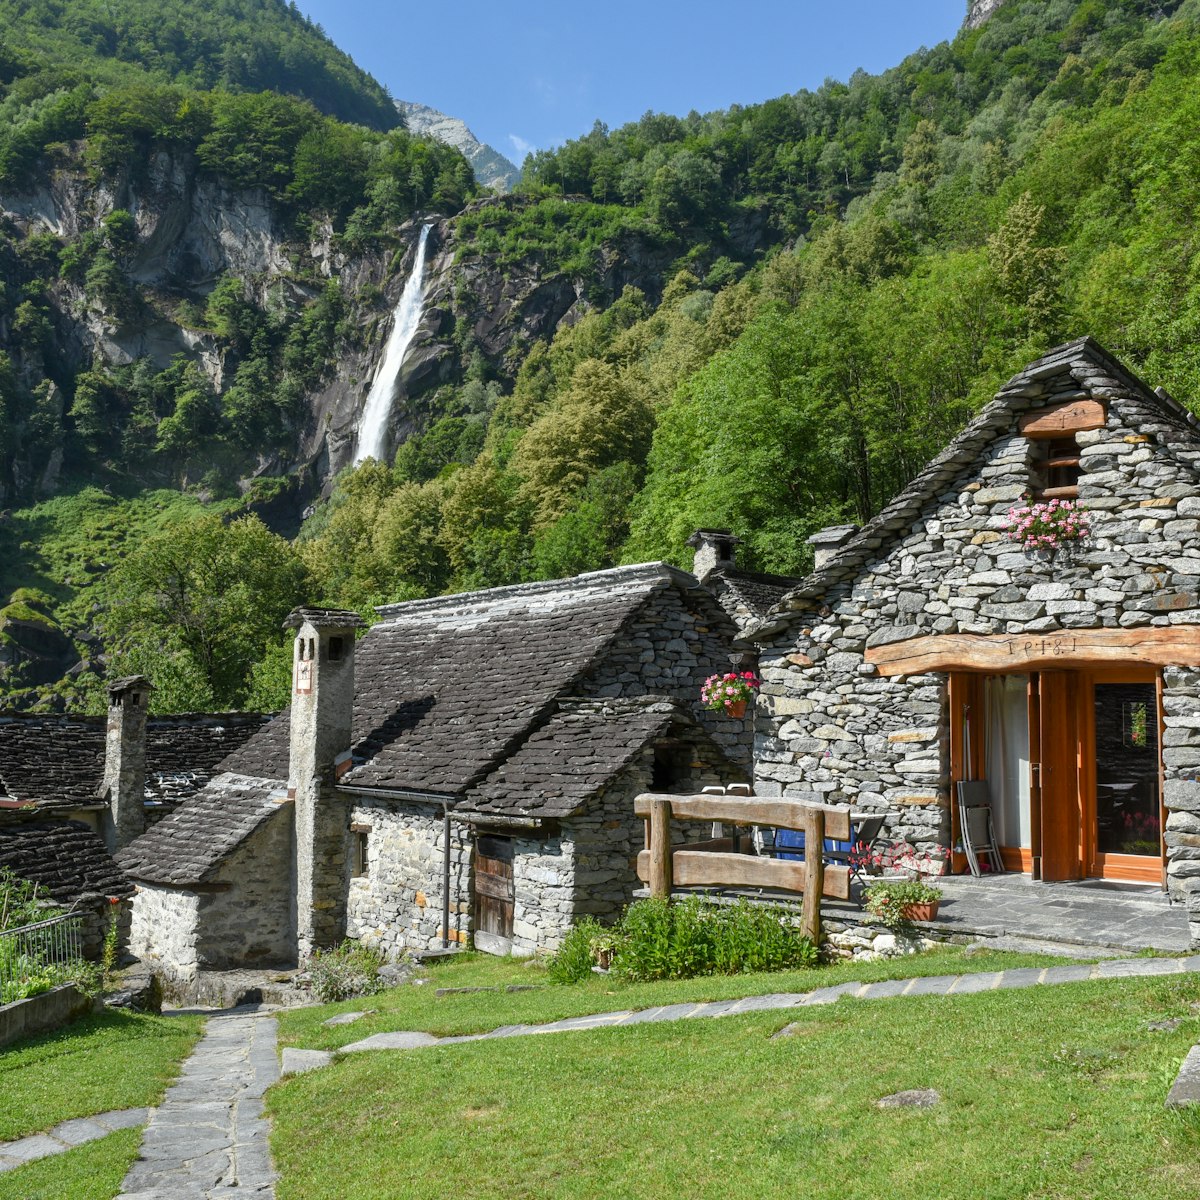 The village of Foroglio in Bavona valley, Switzerland.